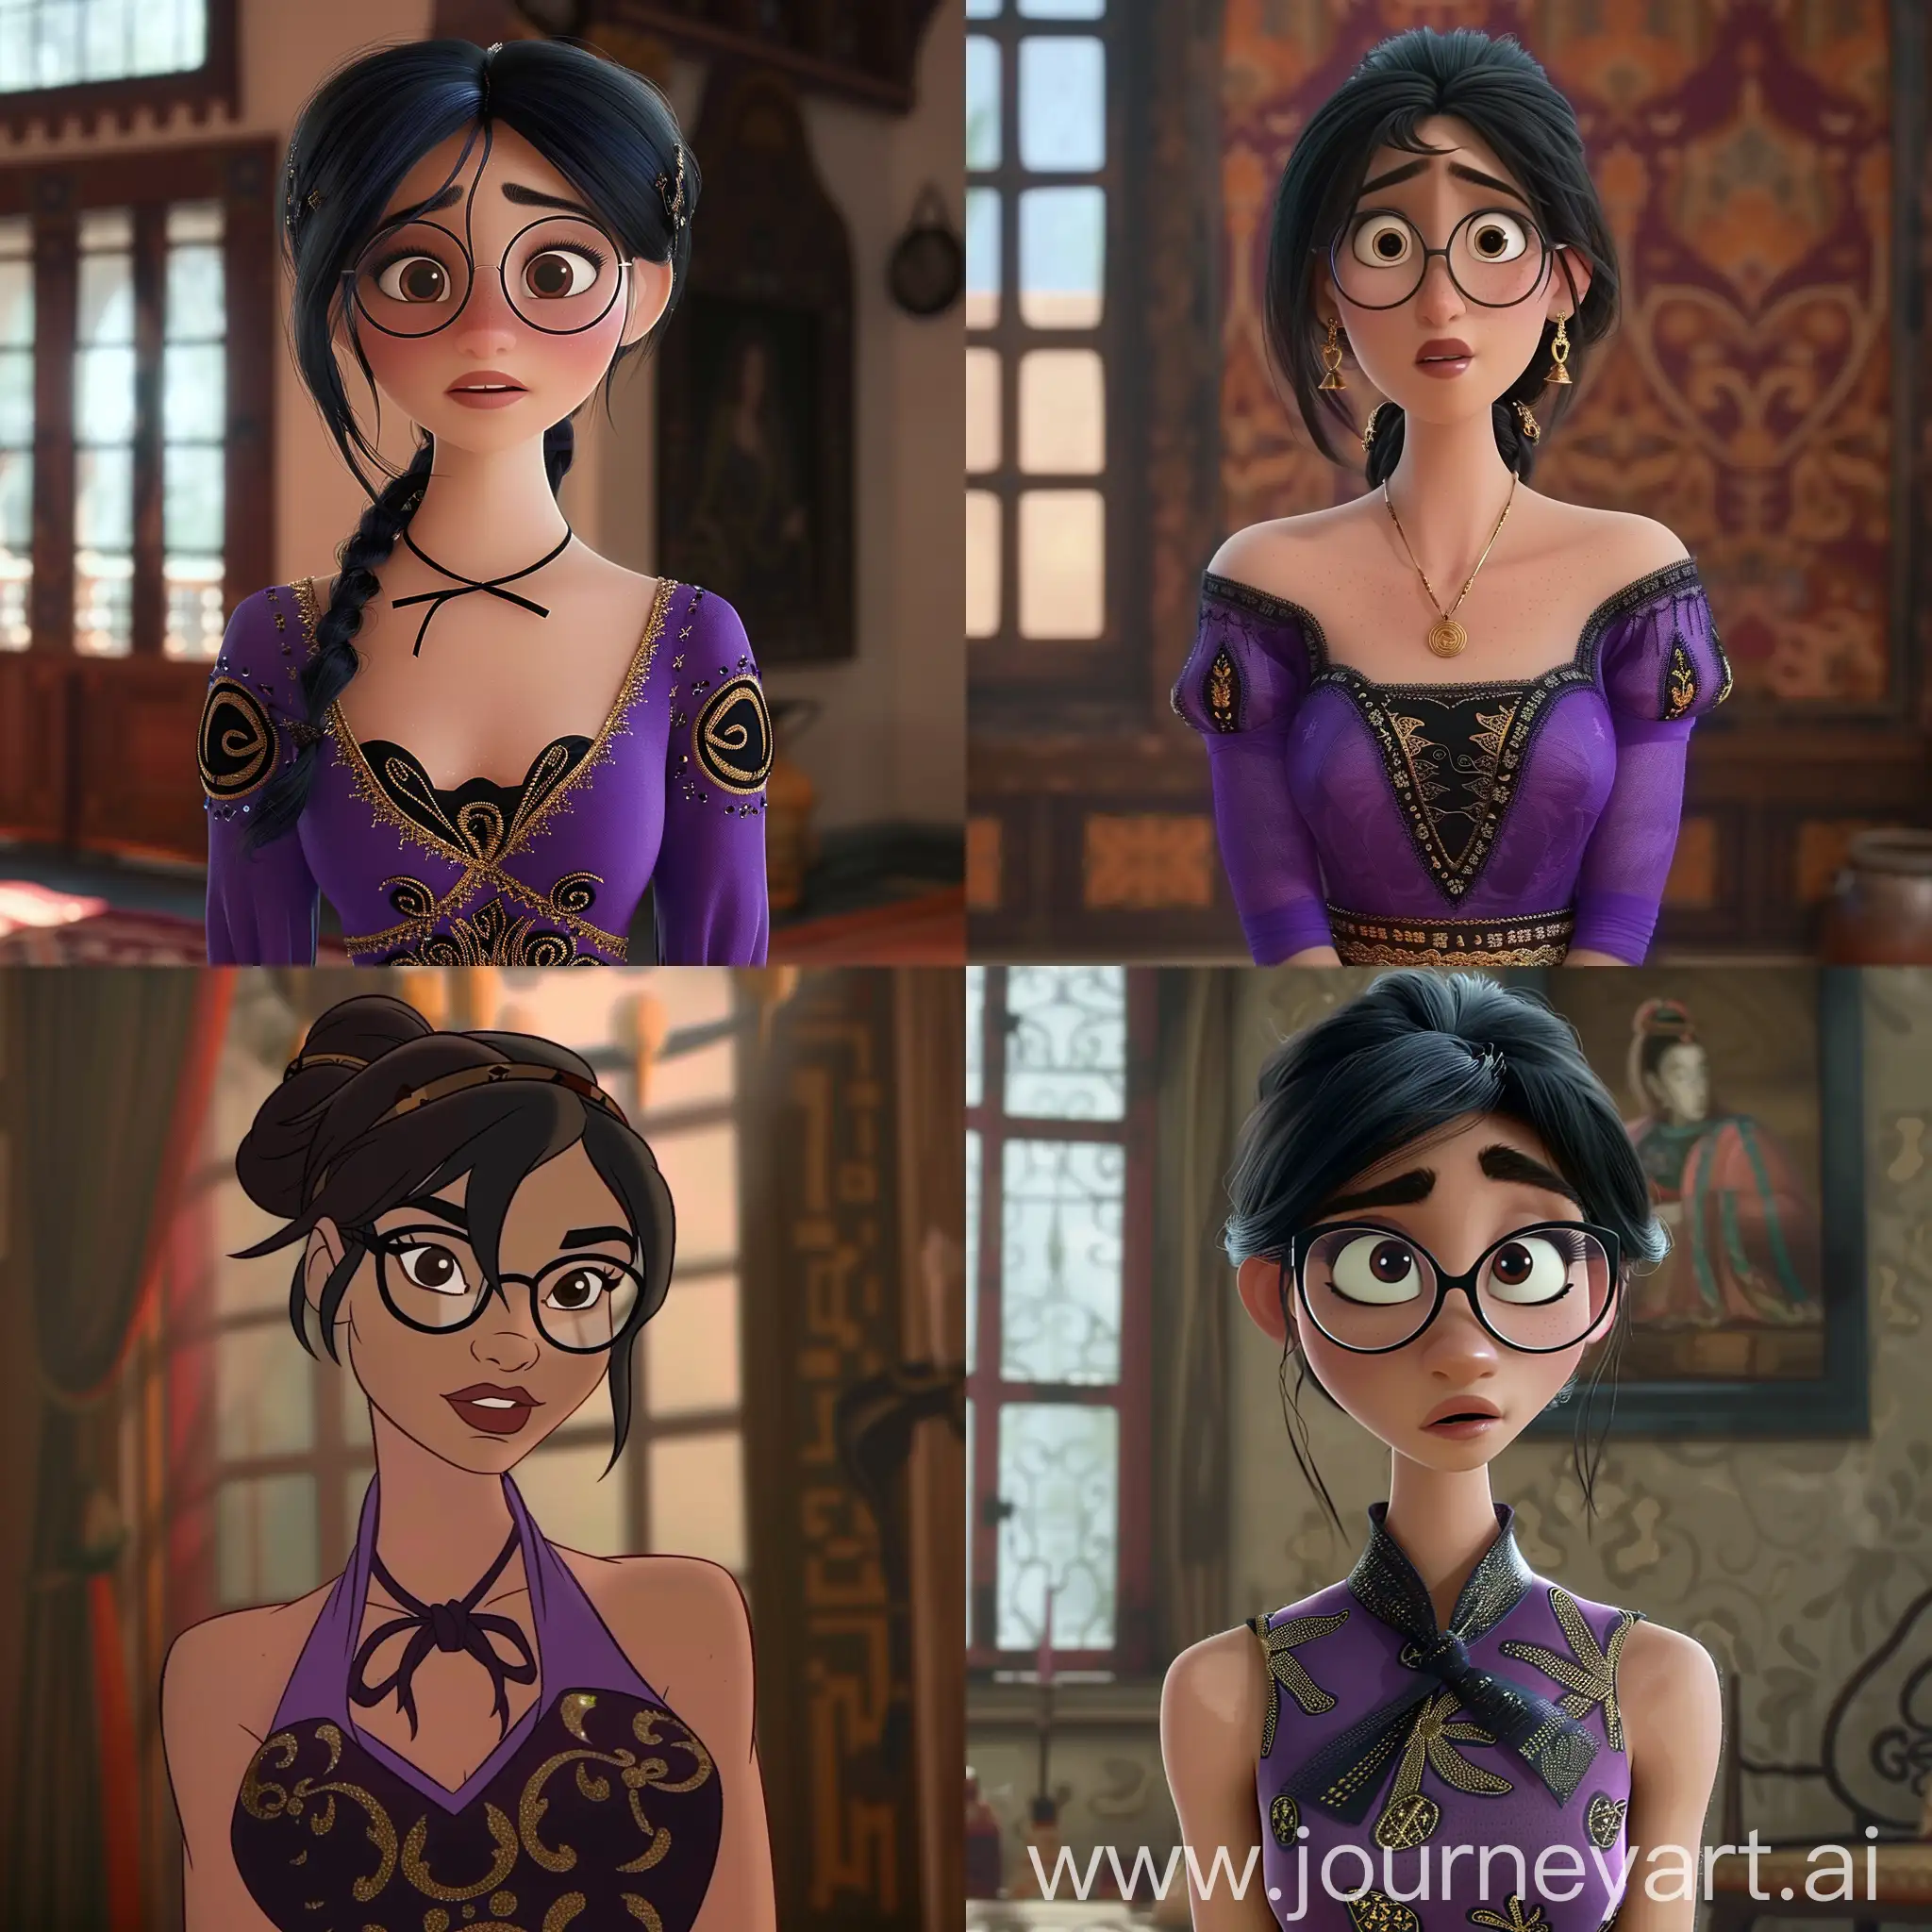 Disney-Modern-Animation-Brunette-Woman-in-Stylish-Purple-Dress